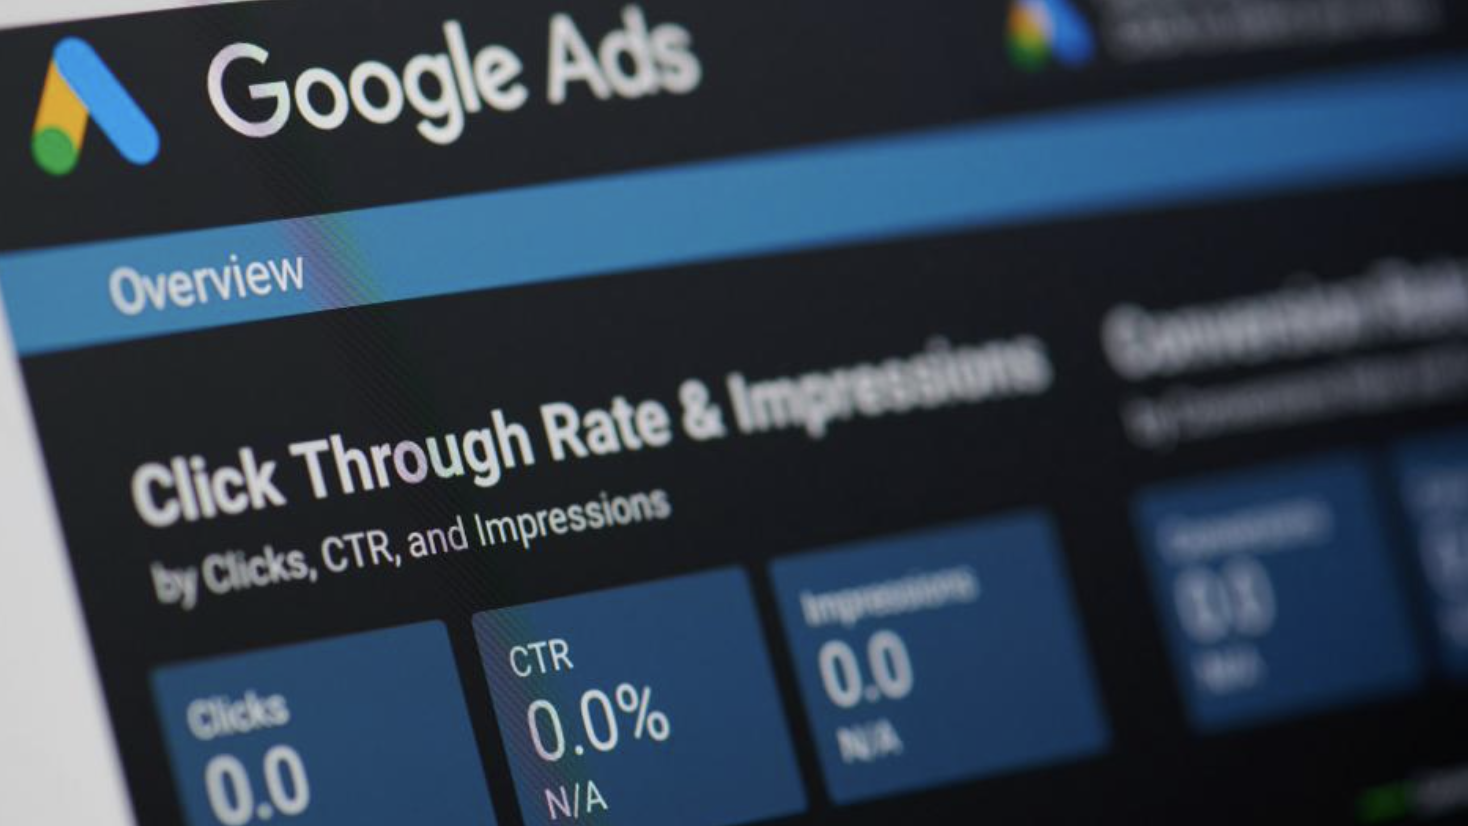 Google’s kwartaalcijfers bevestigen dat de advertentiemarkt het lastig heeft